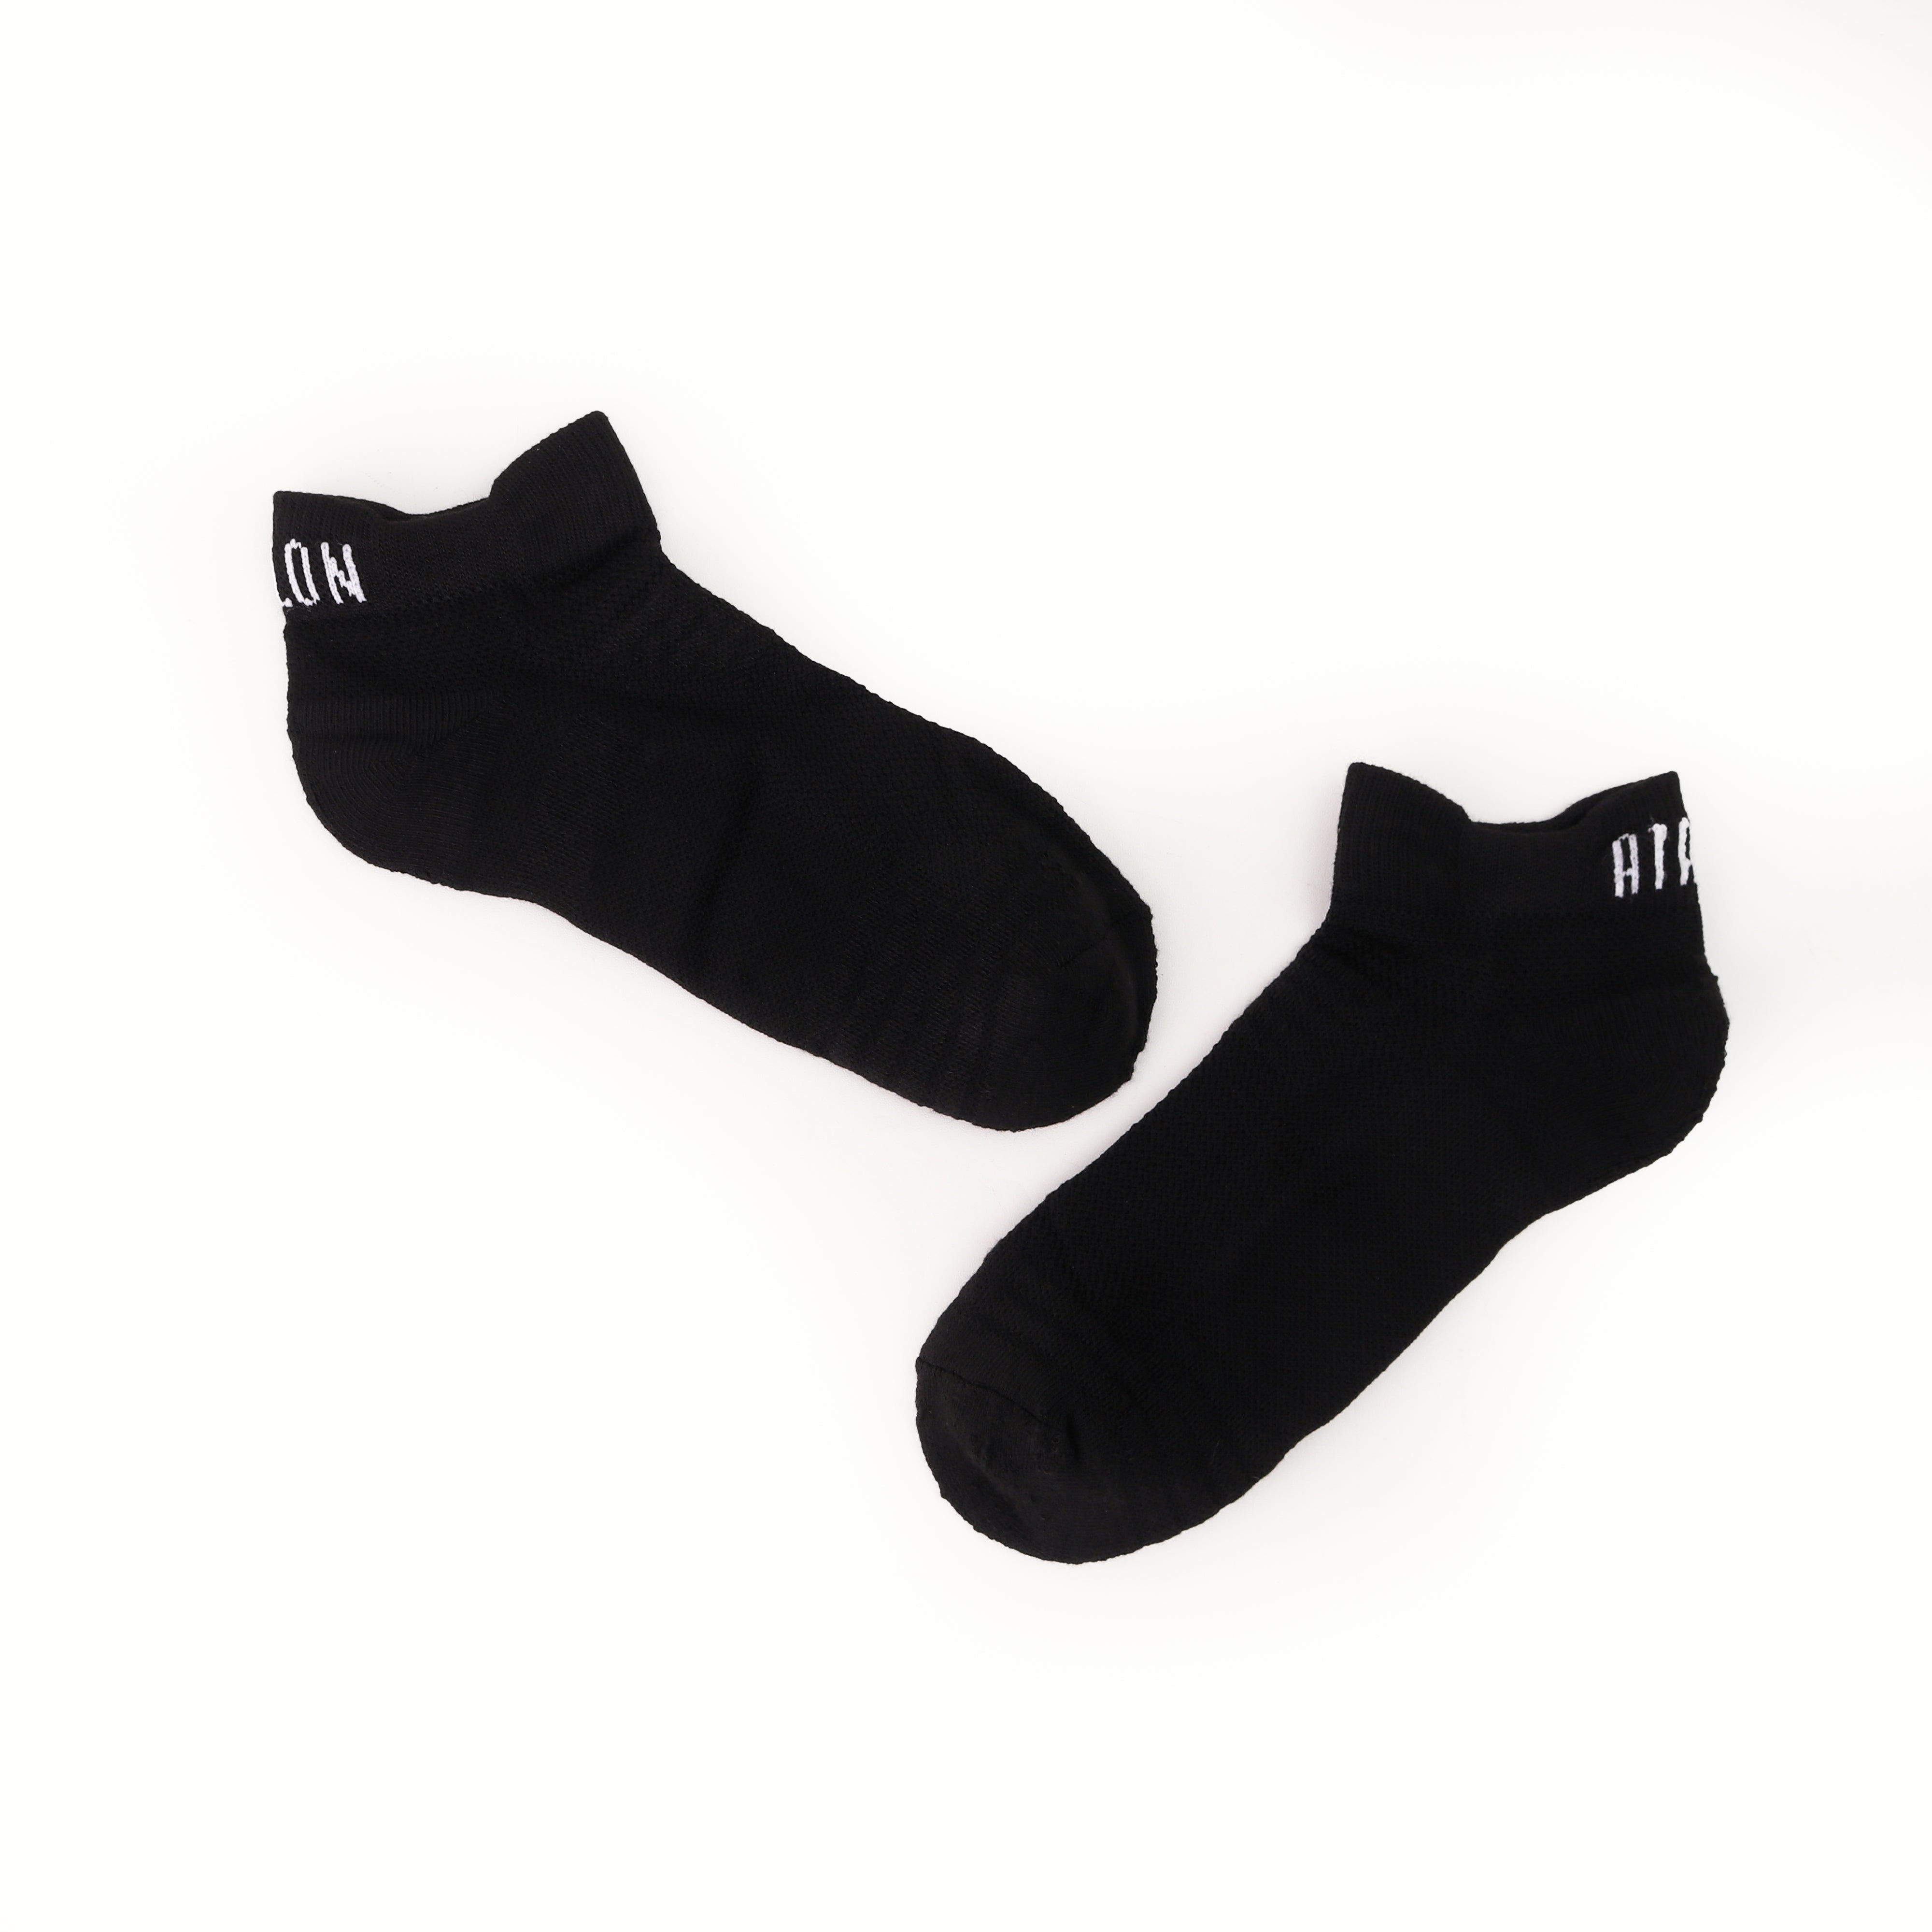 Atalon Short Socks